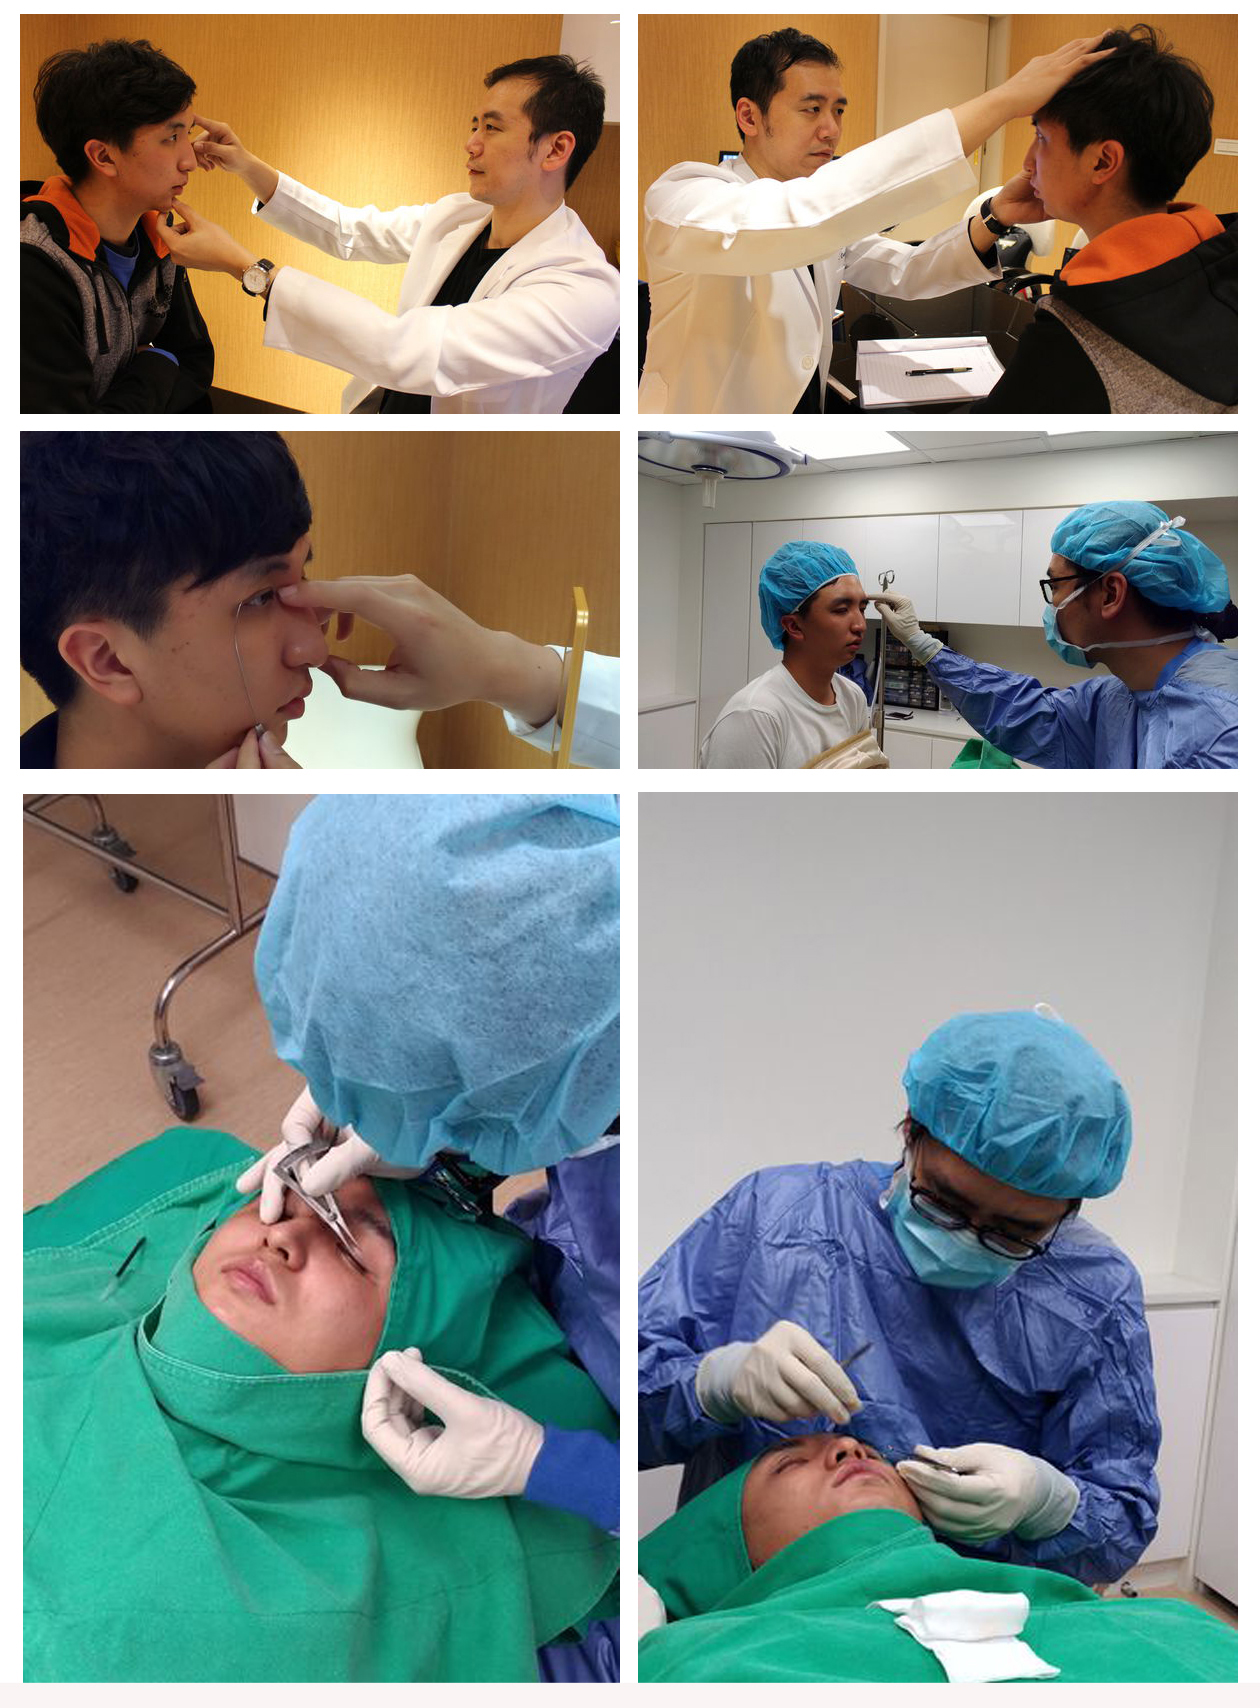 歐式雙眼皮手術諮詢評估與手術過程